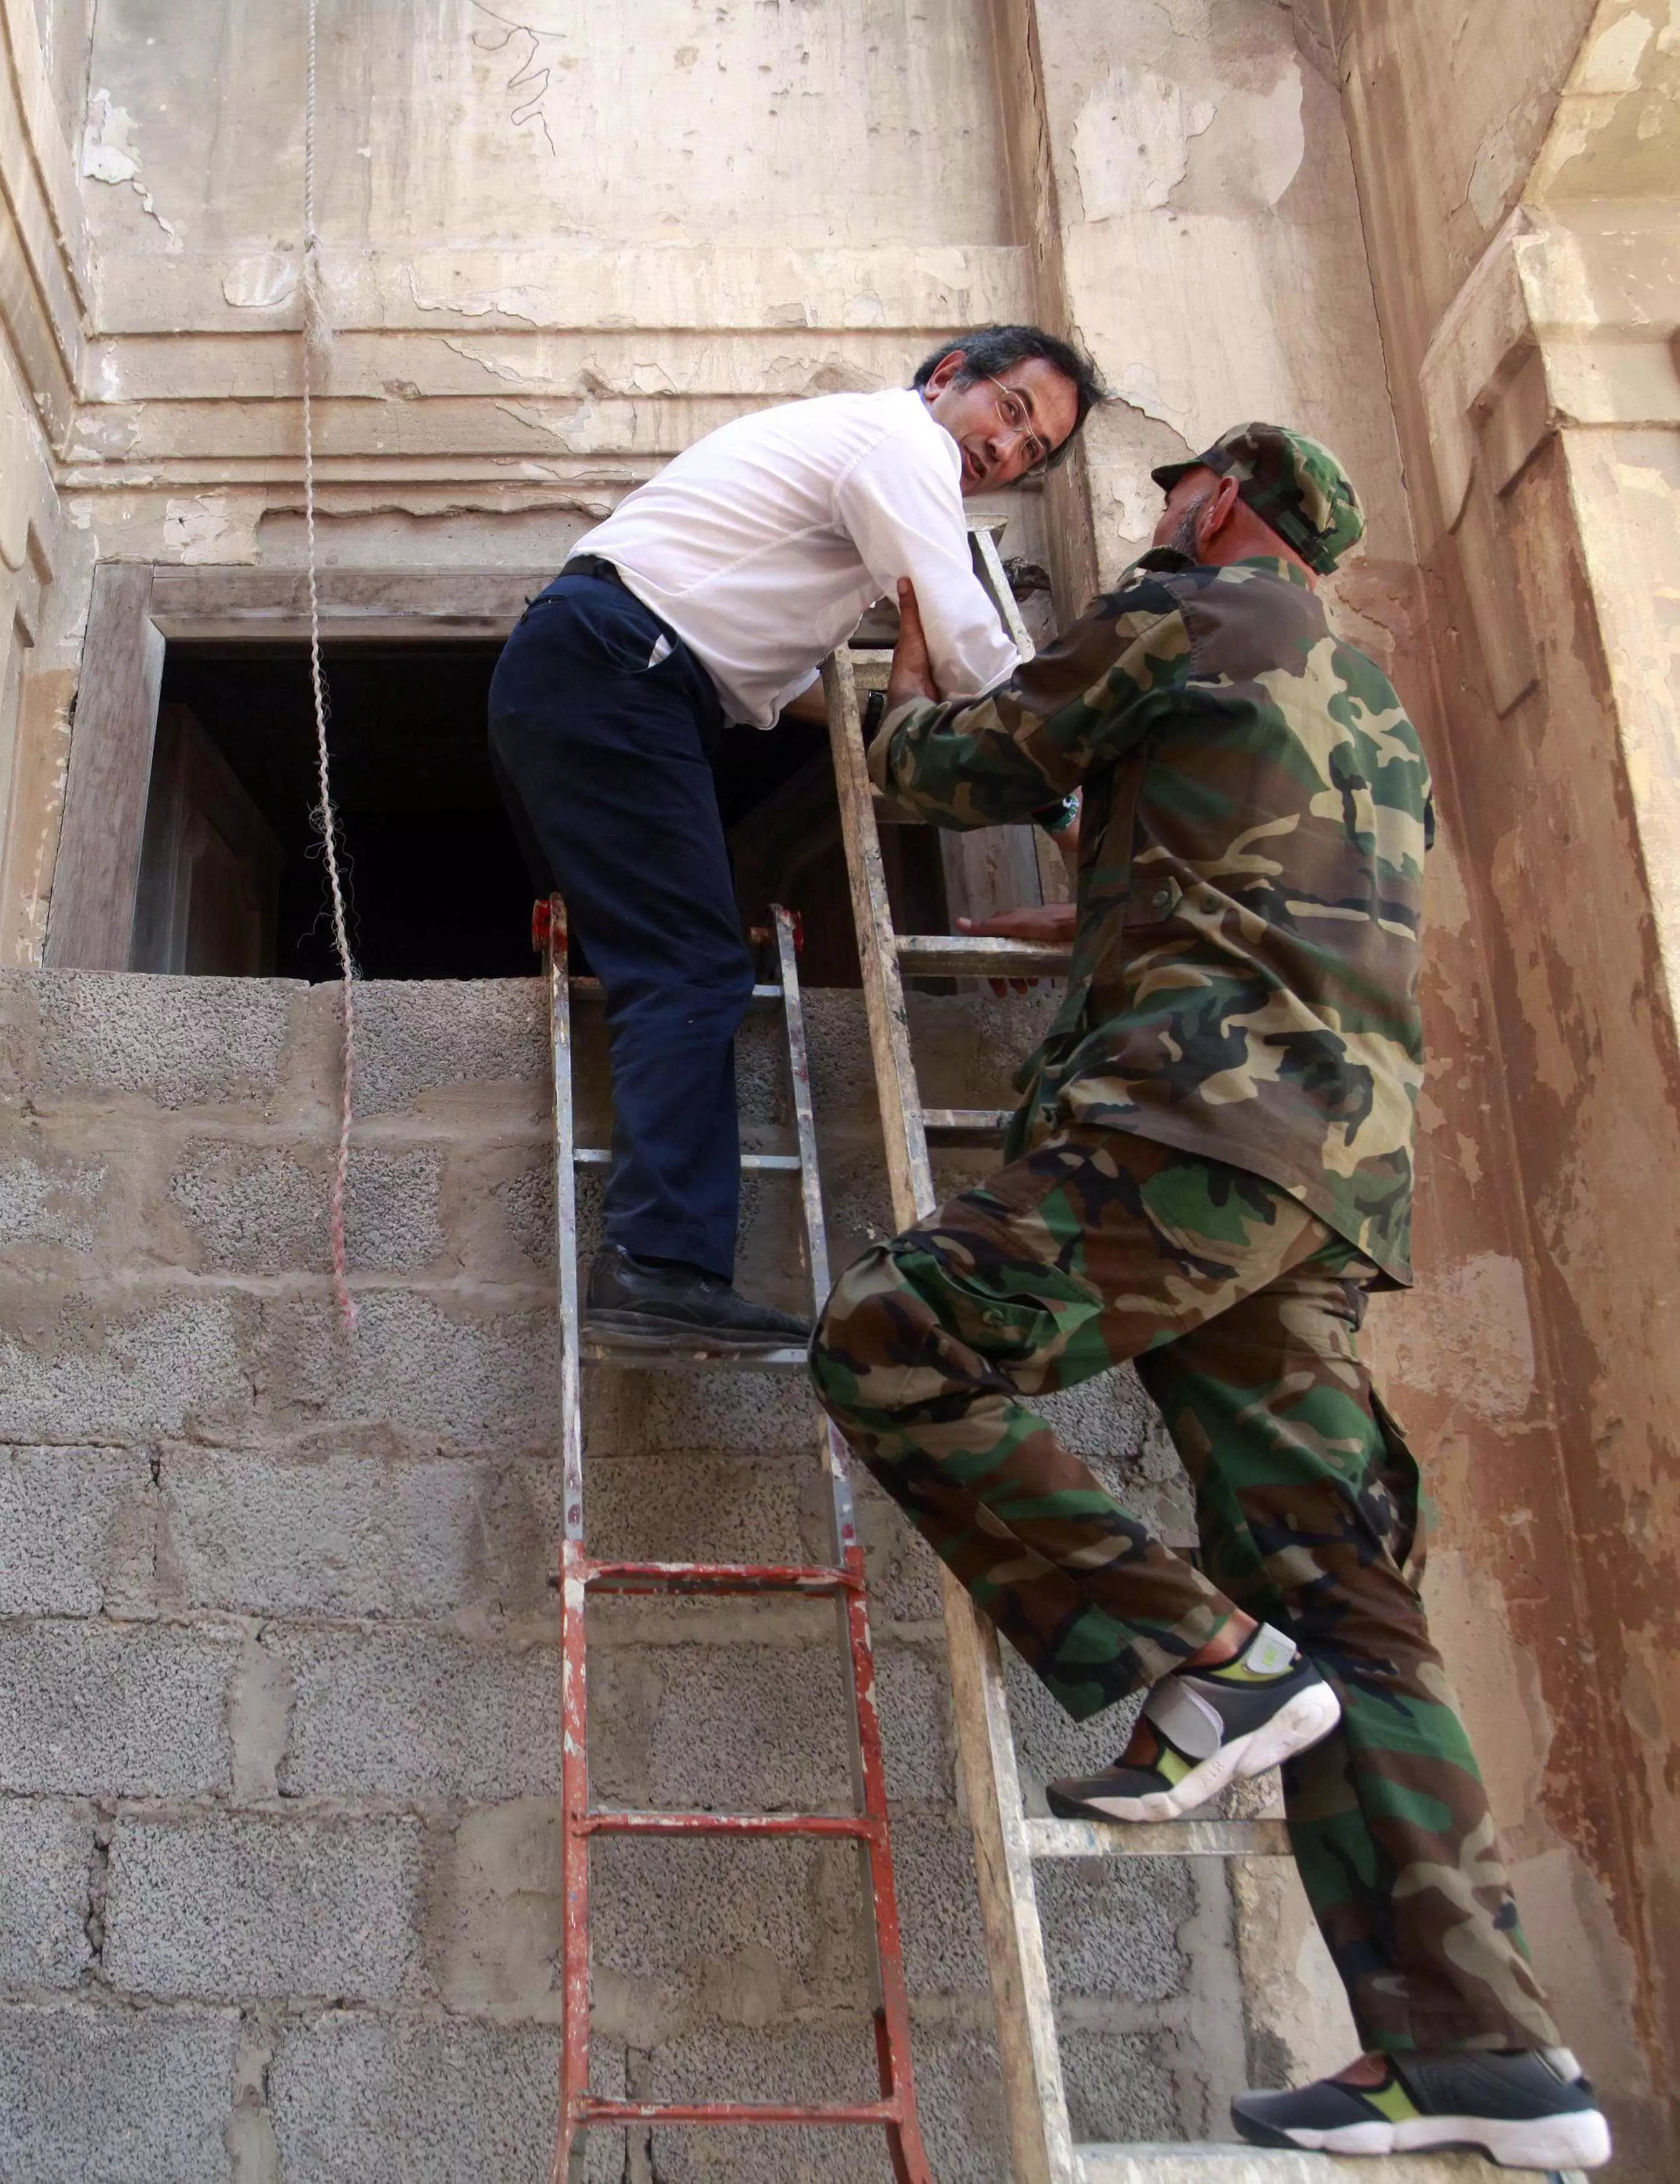 עם קצת עזרה מחברים. נציג המורדים עוזר לג'רבי לטפס אל בית הכנסת דרך חרך בקיר